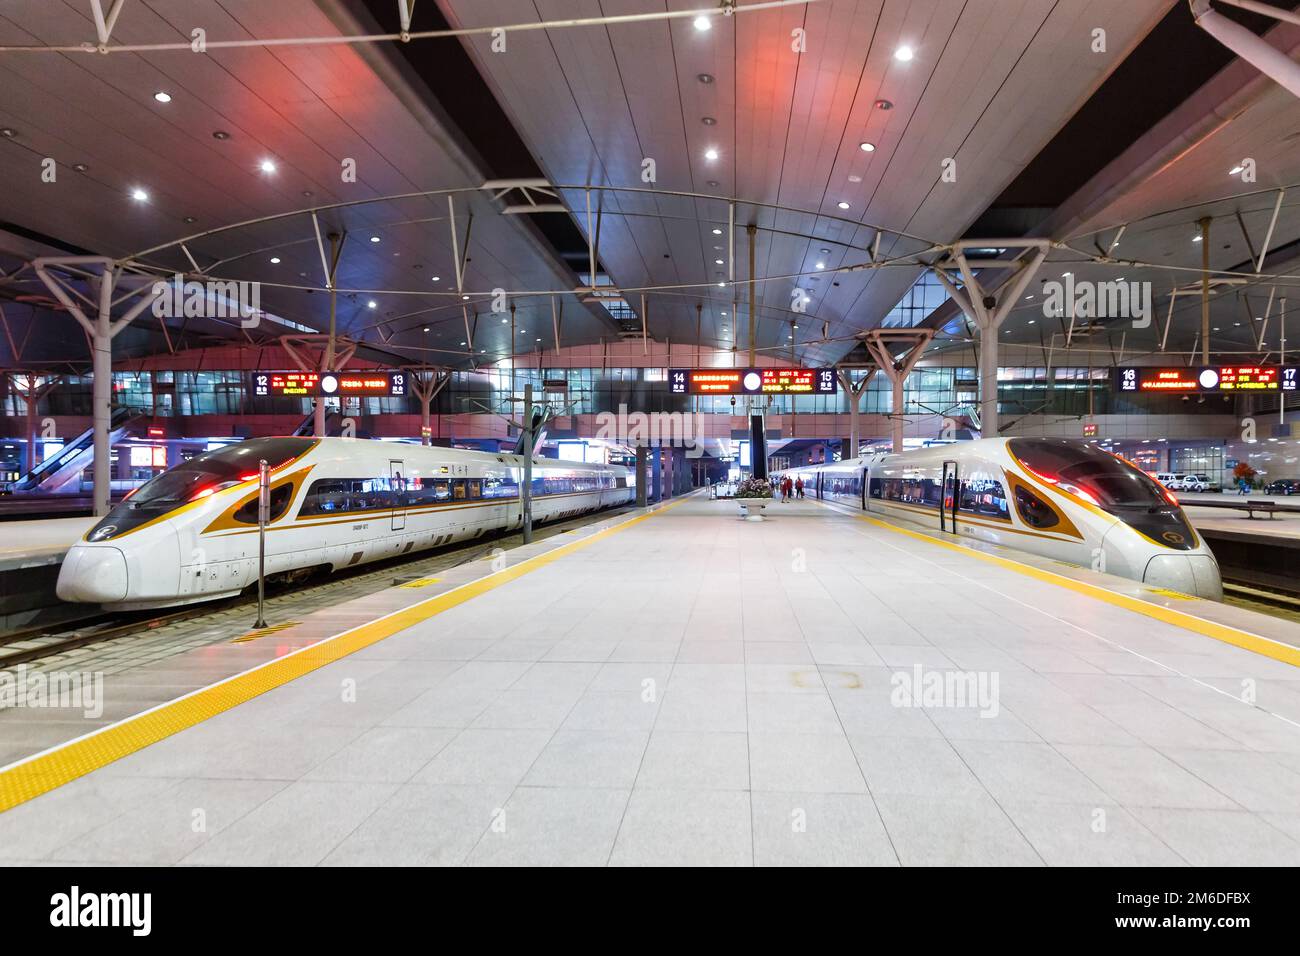 Fuxing trains à grande vitesse Gare de Tianjin en Chine Banque D'Images